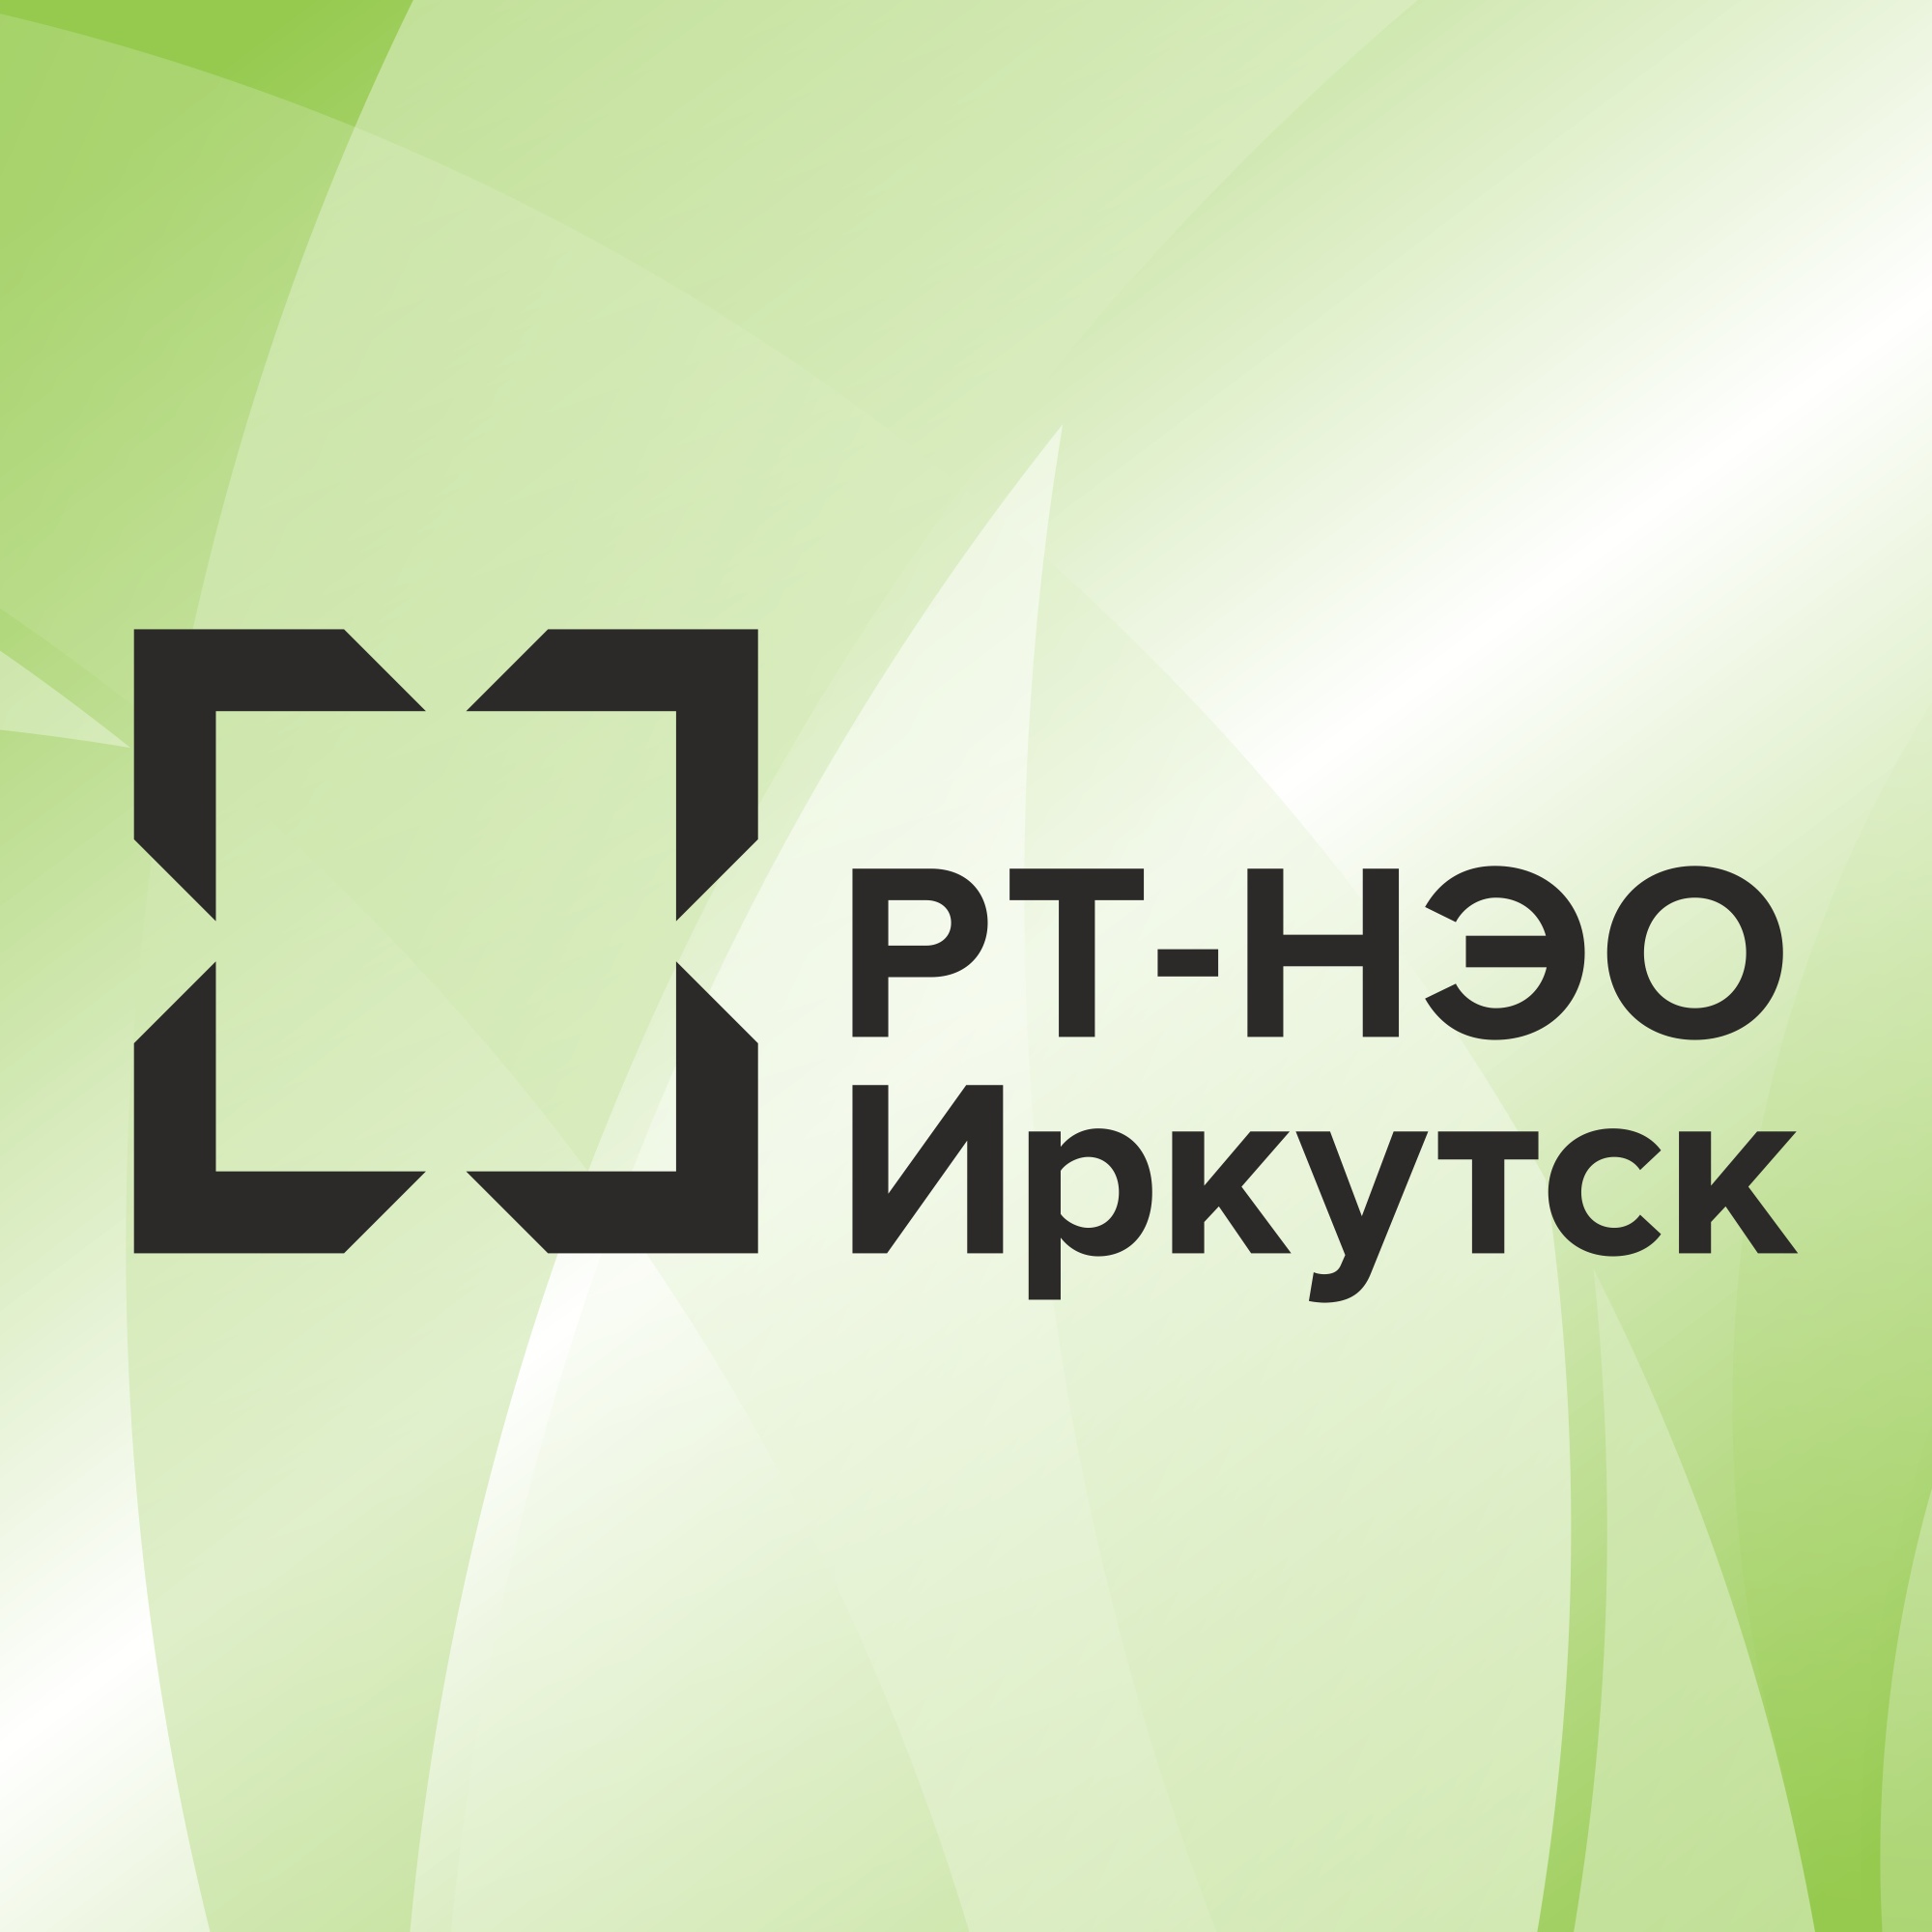 Получить ответы на вопросы в сфере обращения с ТКО можно в личном кабинете “РТ-НЭО Иркутск” или на страницах в социальных сетях компании